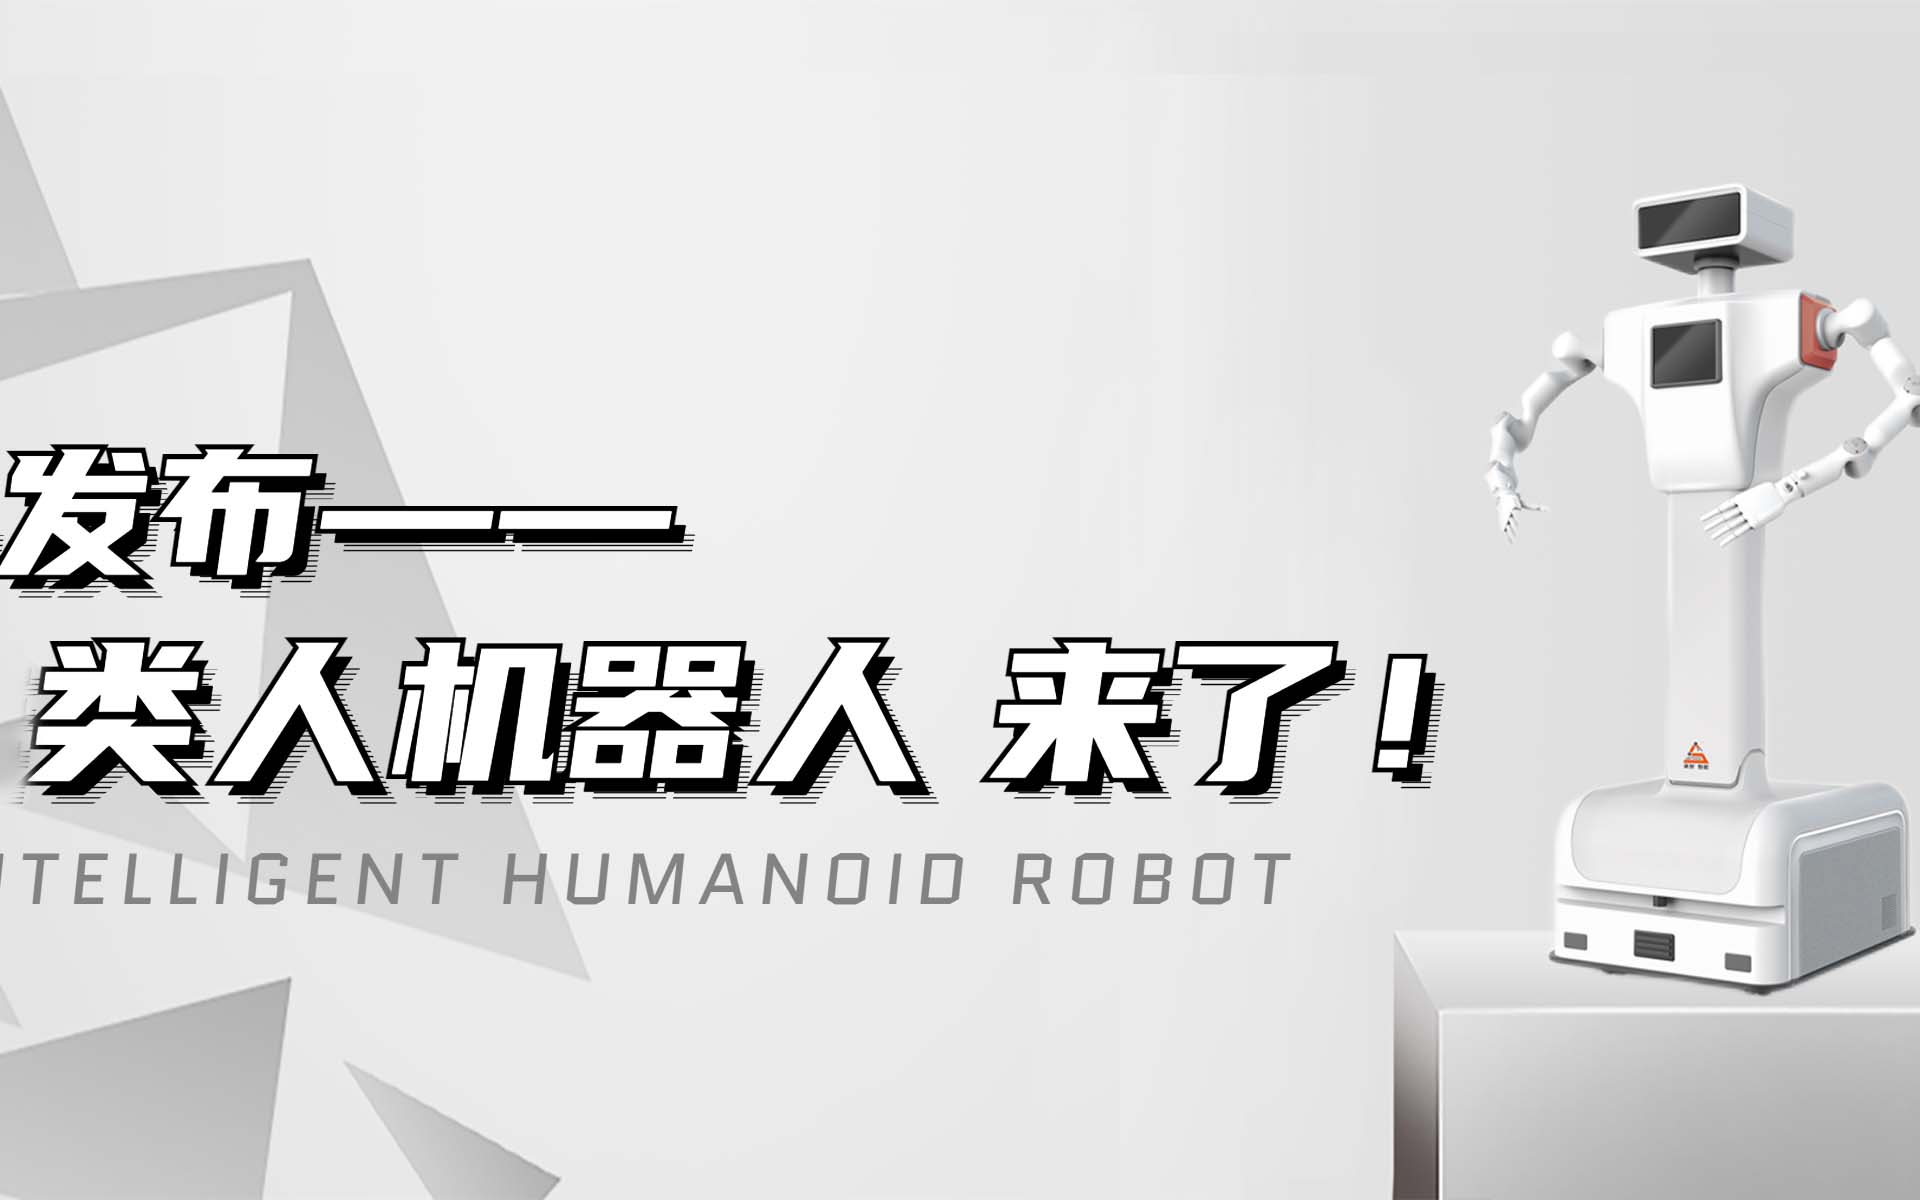 【新品发布】2138cn太阳集团官网主页类人机器人来啦！